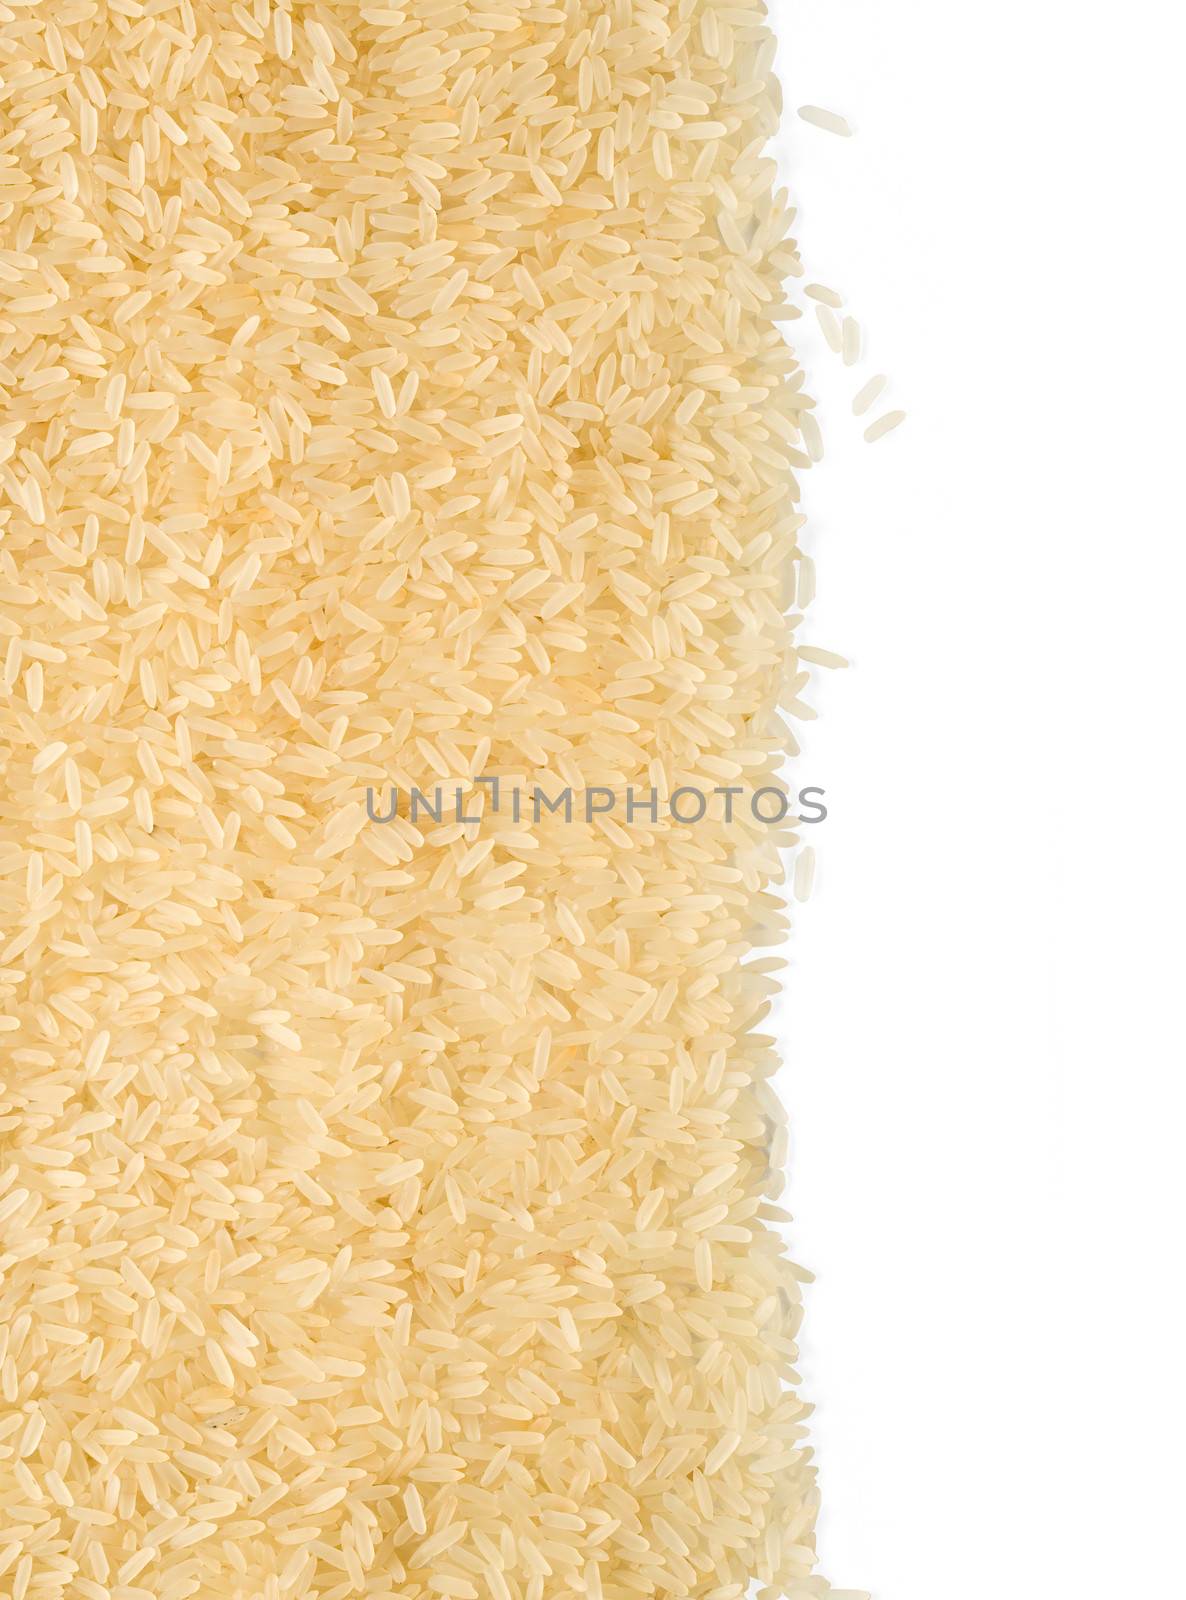 grains of rice by kornienko